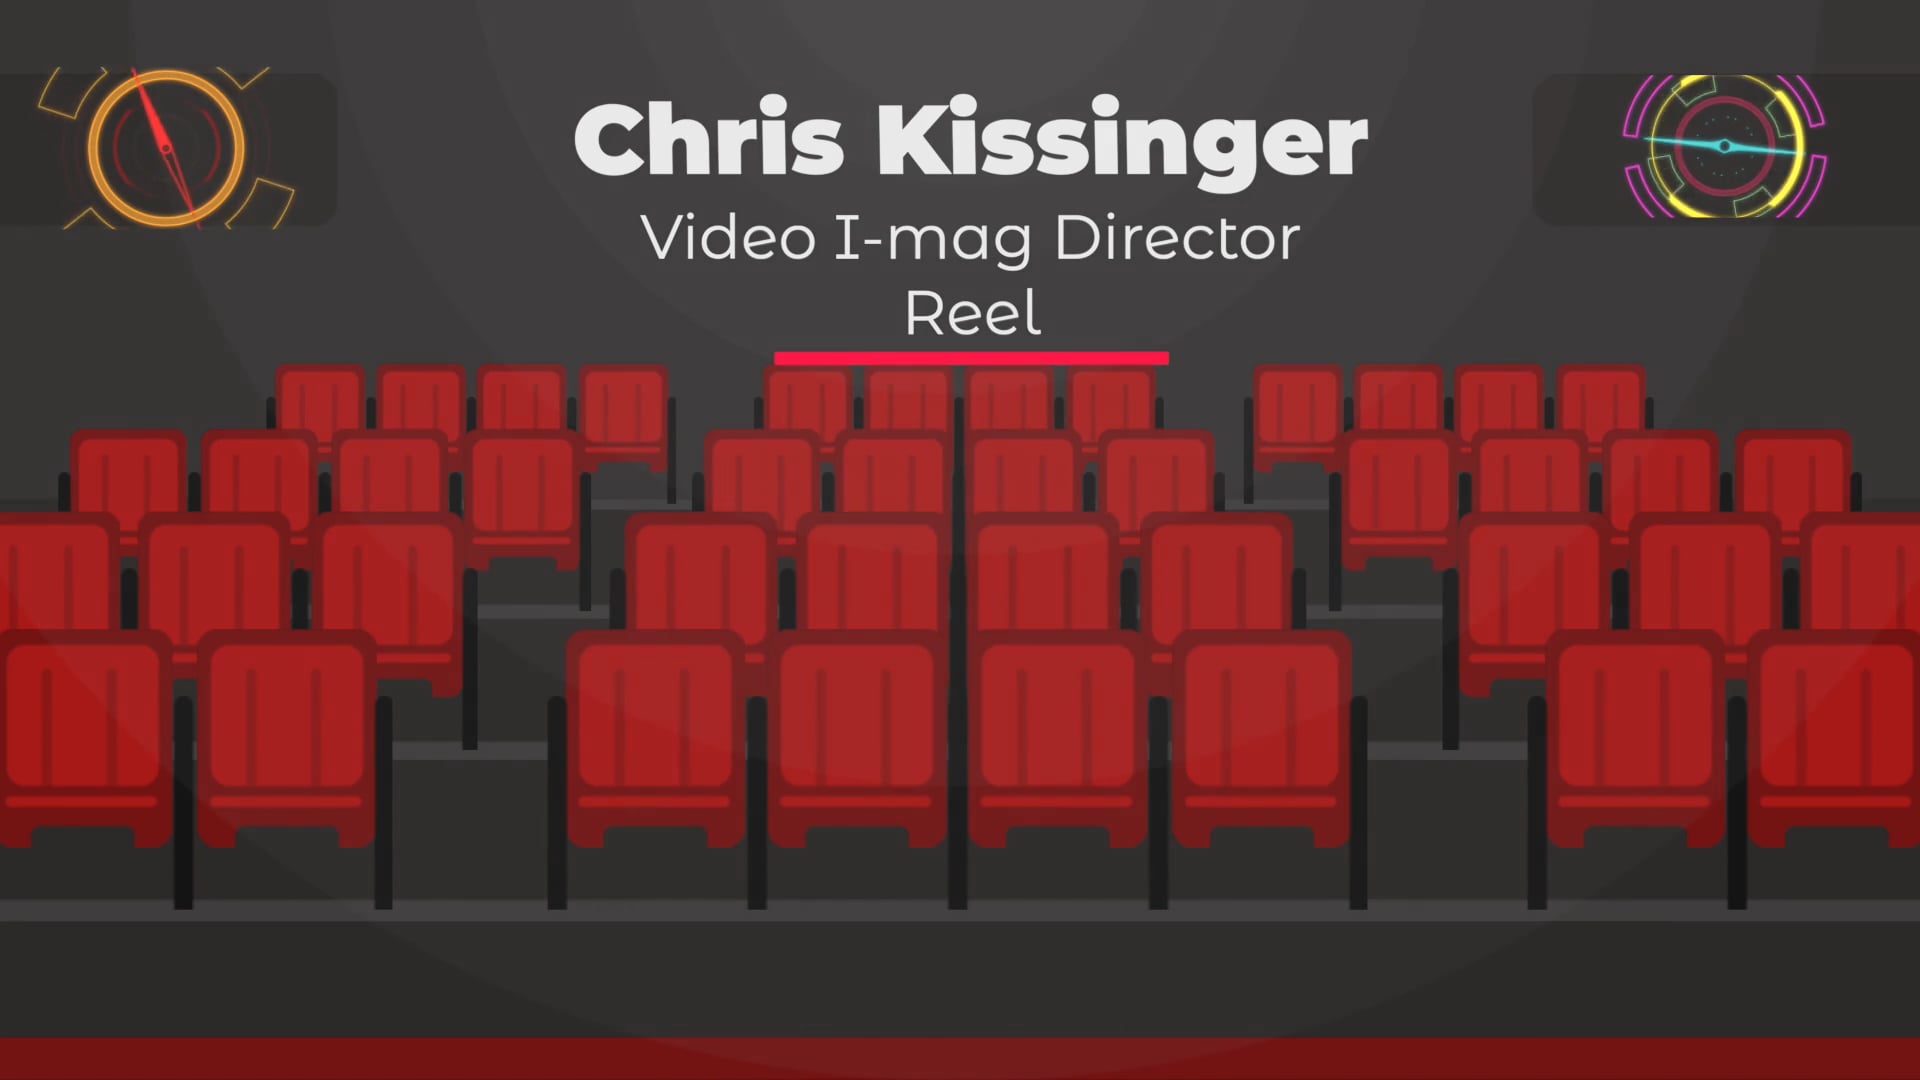 Chris Kissinger i-mag video directing reel 10 min